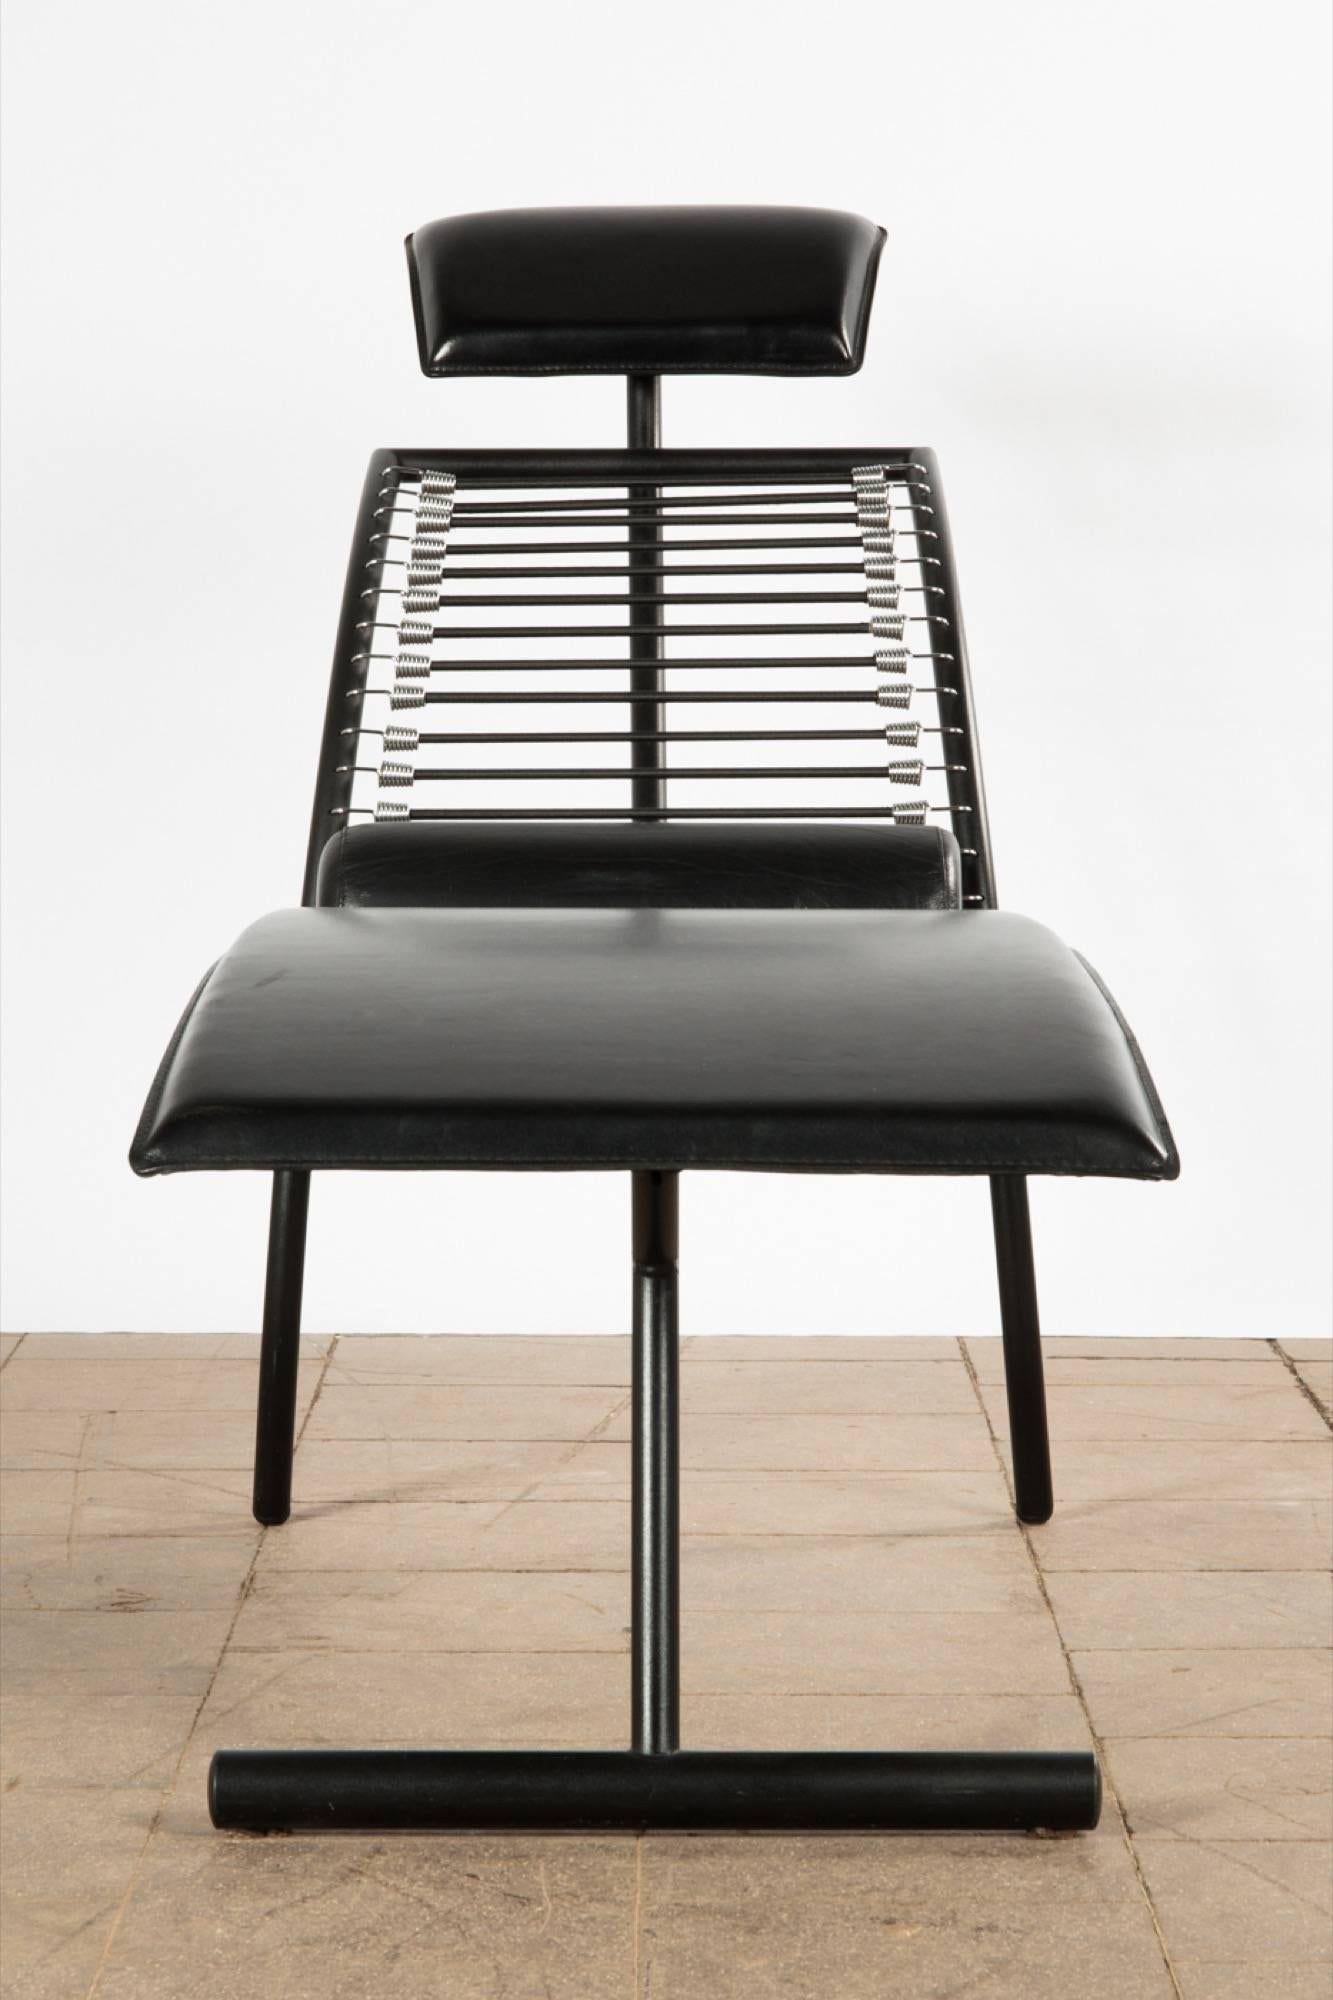 Postmoderner Chaiselongue-Sessel italienisches Design, um 1980, geschwungene Konstruktion aus schwarz lackiertem Metall und schwarzer Lederpolsterung.